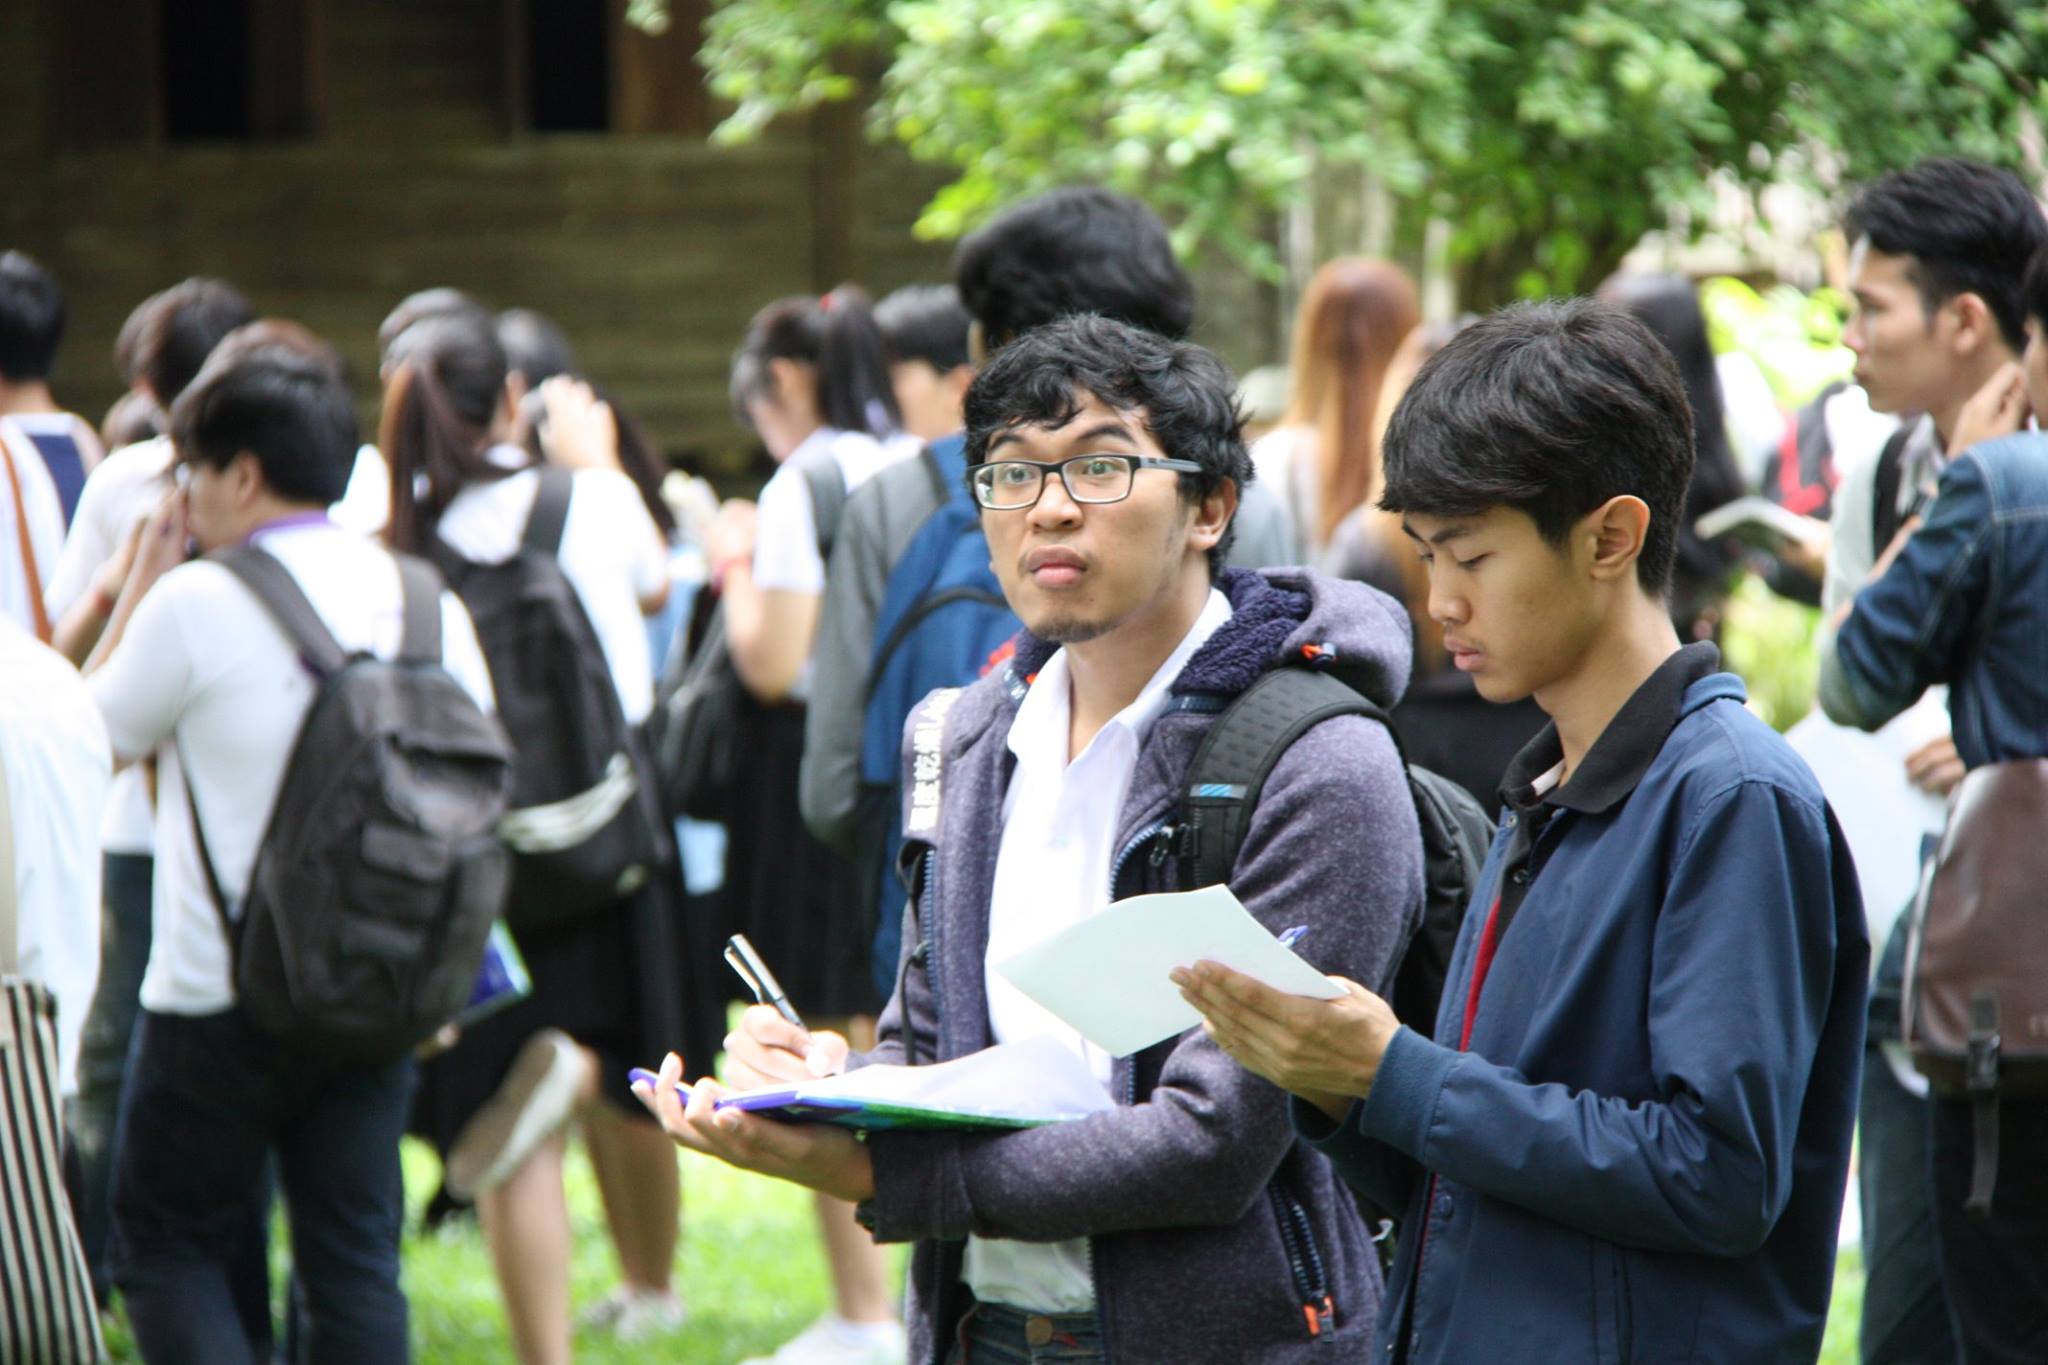 ให้การต้อนรับ อ.ดร.แผ่นดิน อุนจะนำ และคณะนักศึกษาจากคณะสถาปัตยกรรมศาสตร์ มหาวิทยาลัยเชียงใหม่ เมื่อวันที่ 19 มิถุนายน 2560